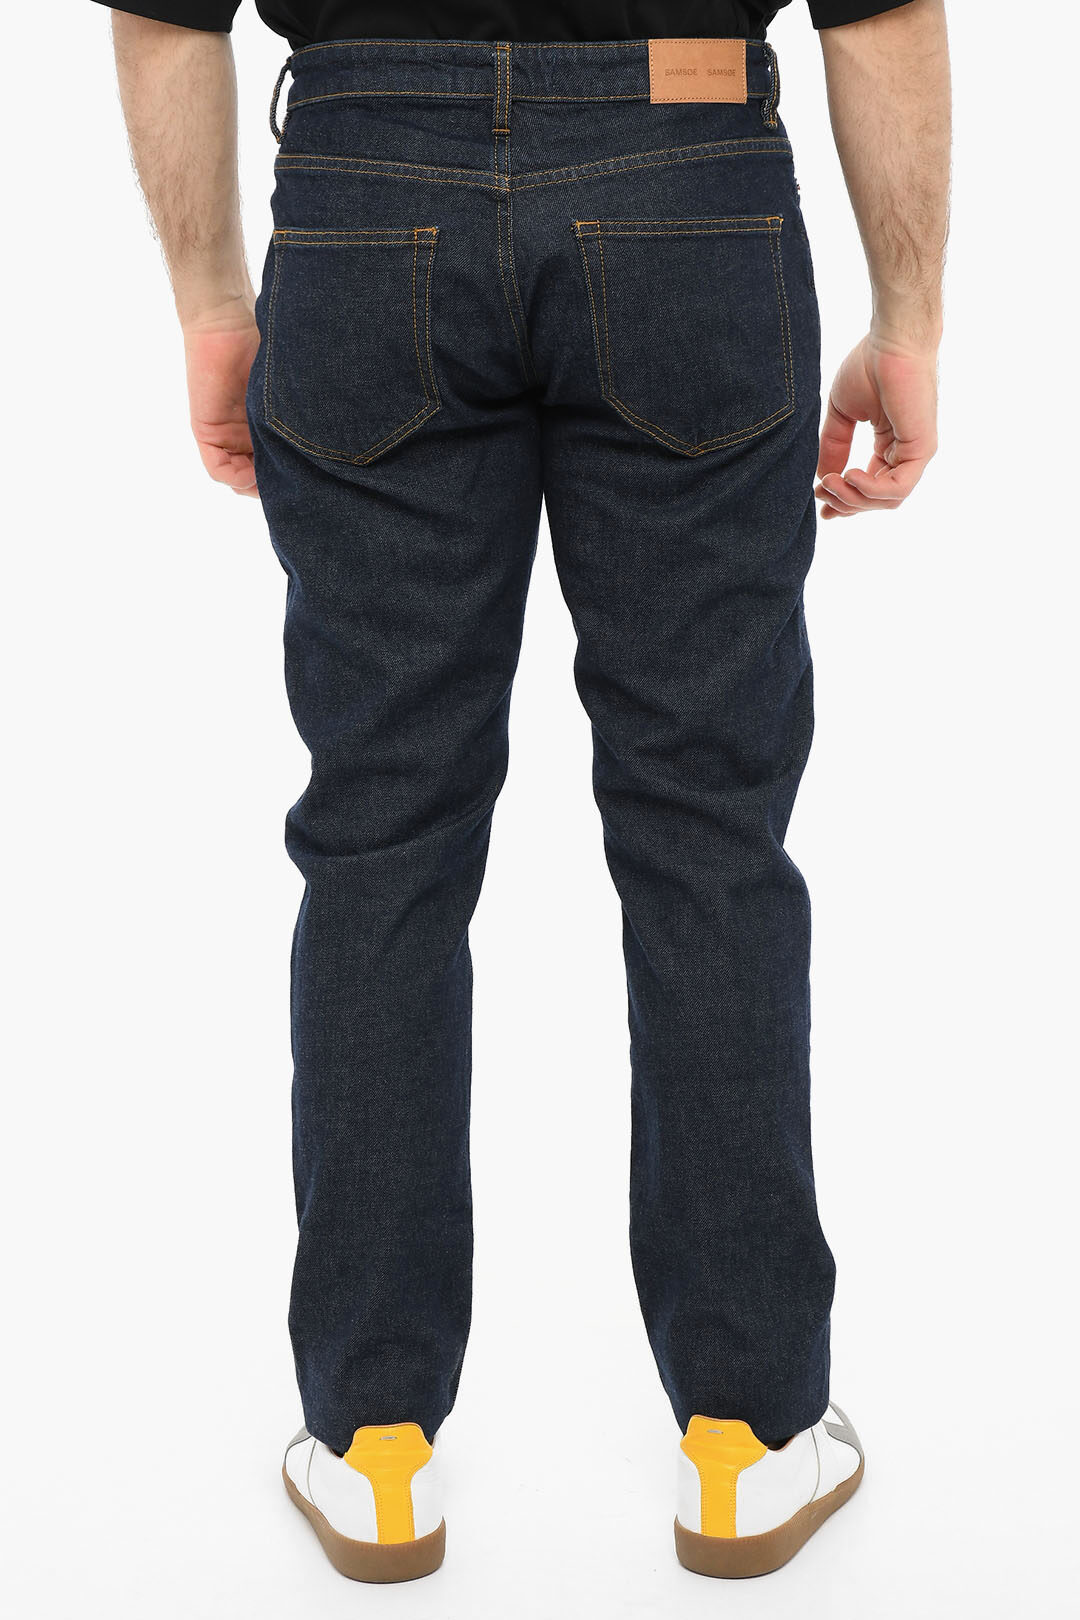 Samsoe Samsoe Dark Washed STEFAN Regular Fit Jeans men - Glamood Outlet